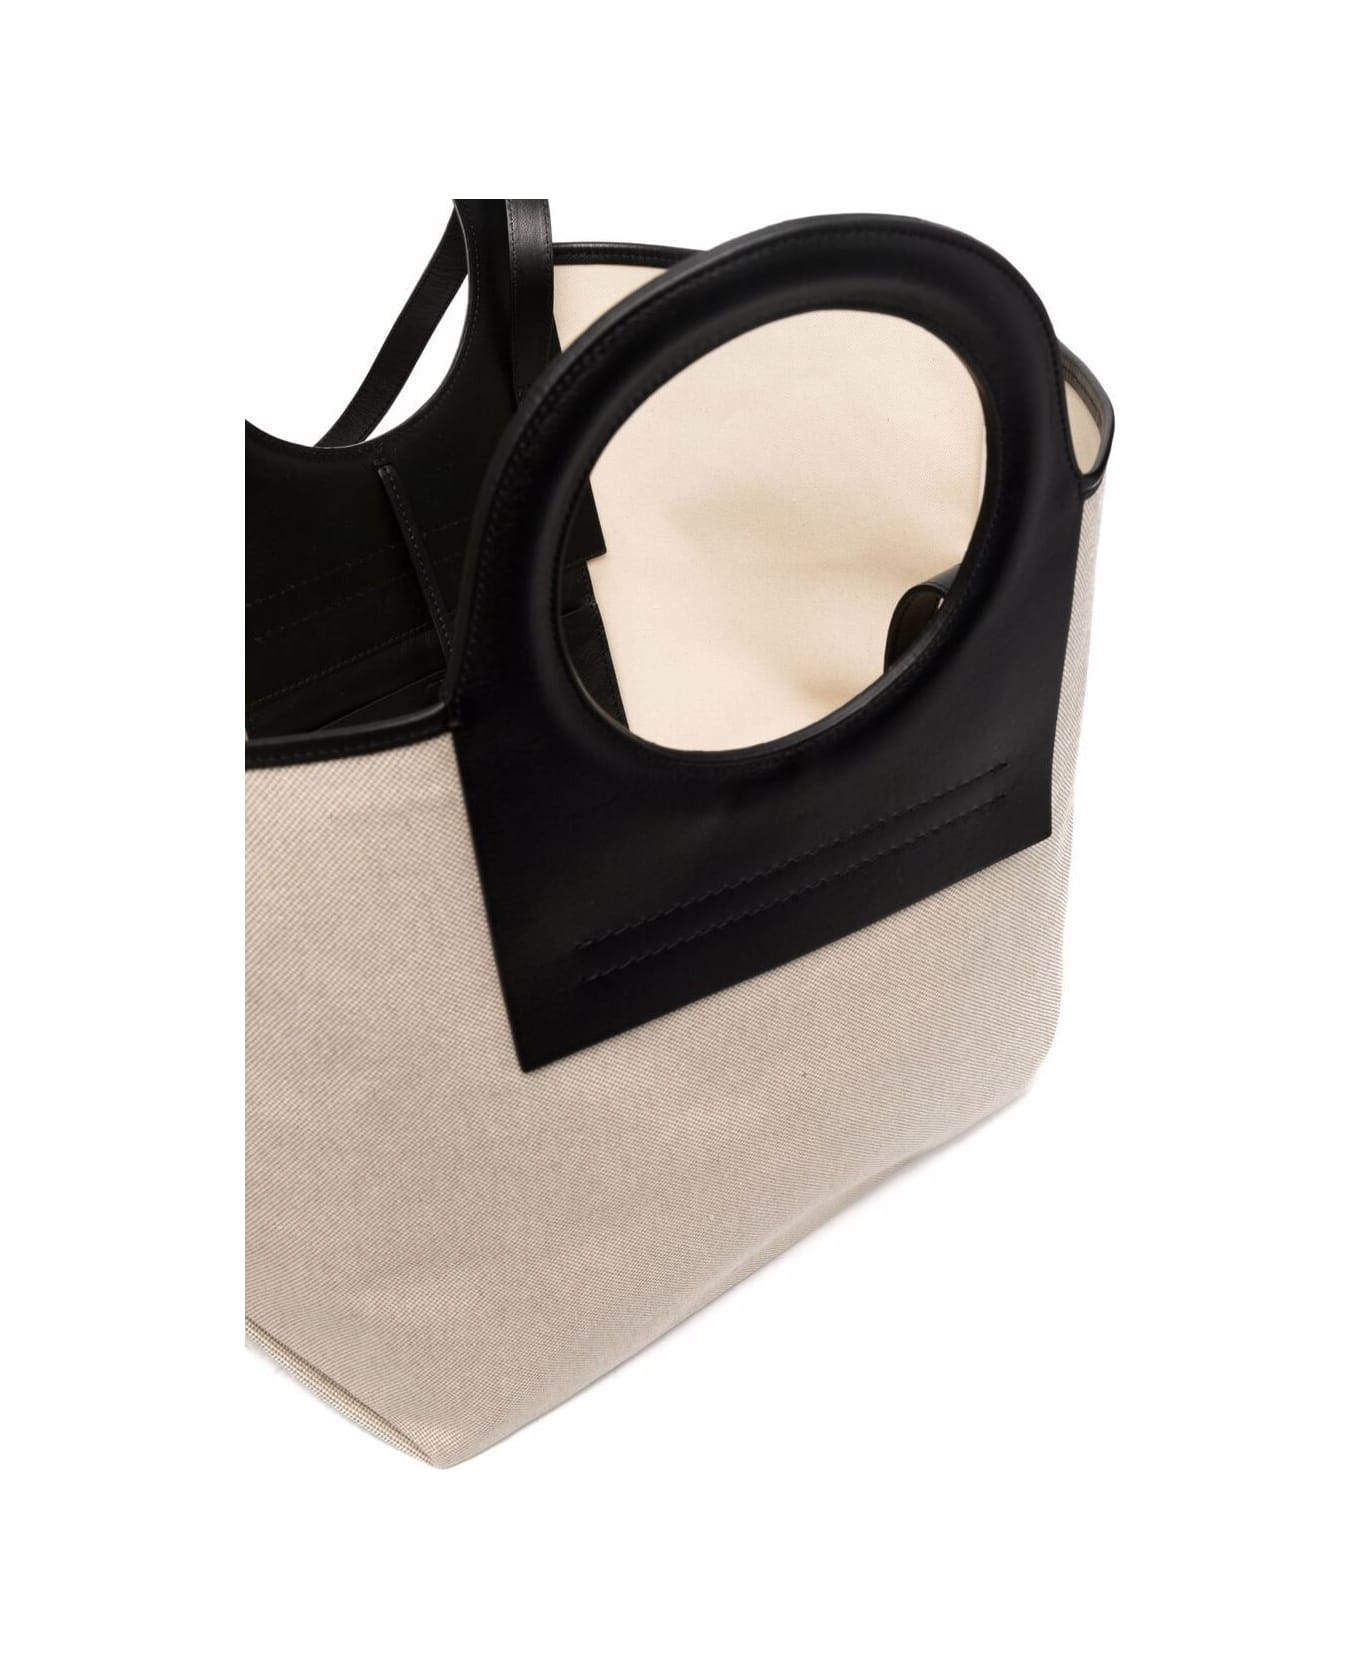 Hereu Cala Small Canvas Tote Bag, Beigeblack, Women's, Handbags & Purses Tote Bags & Totes